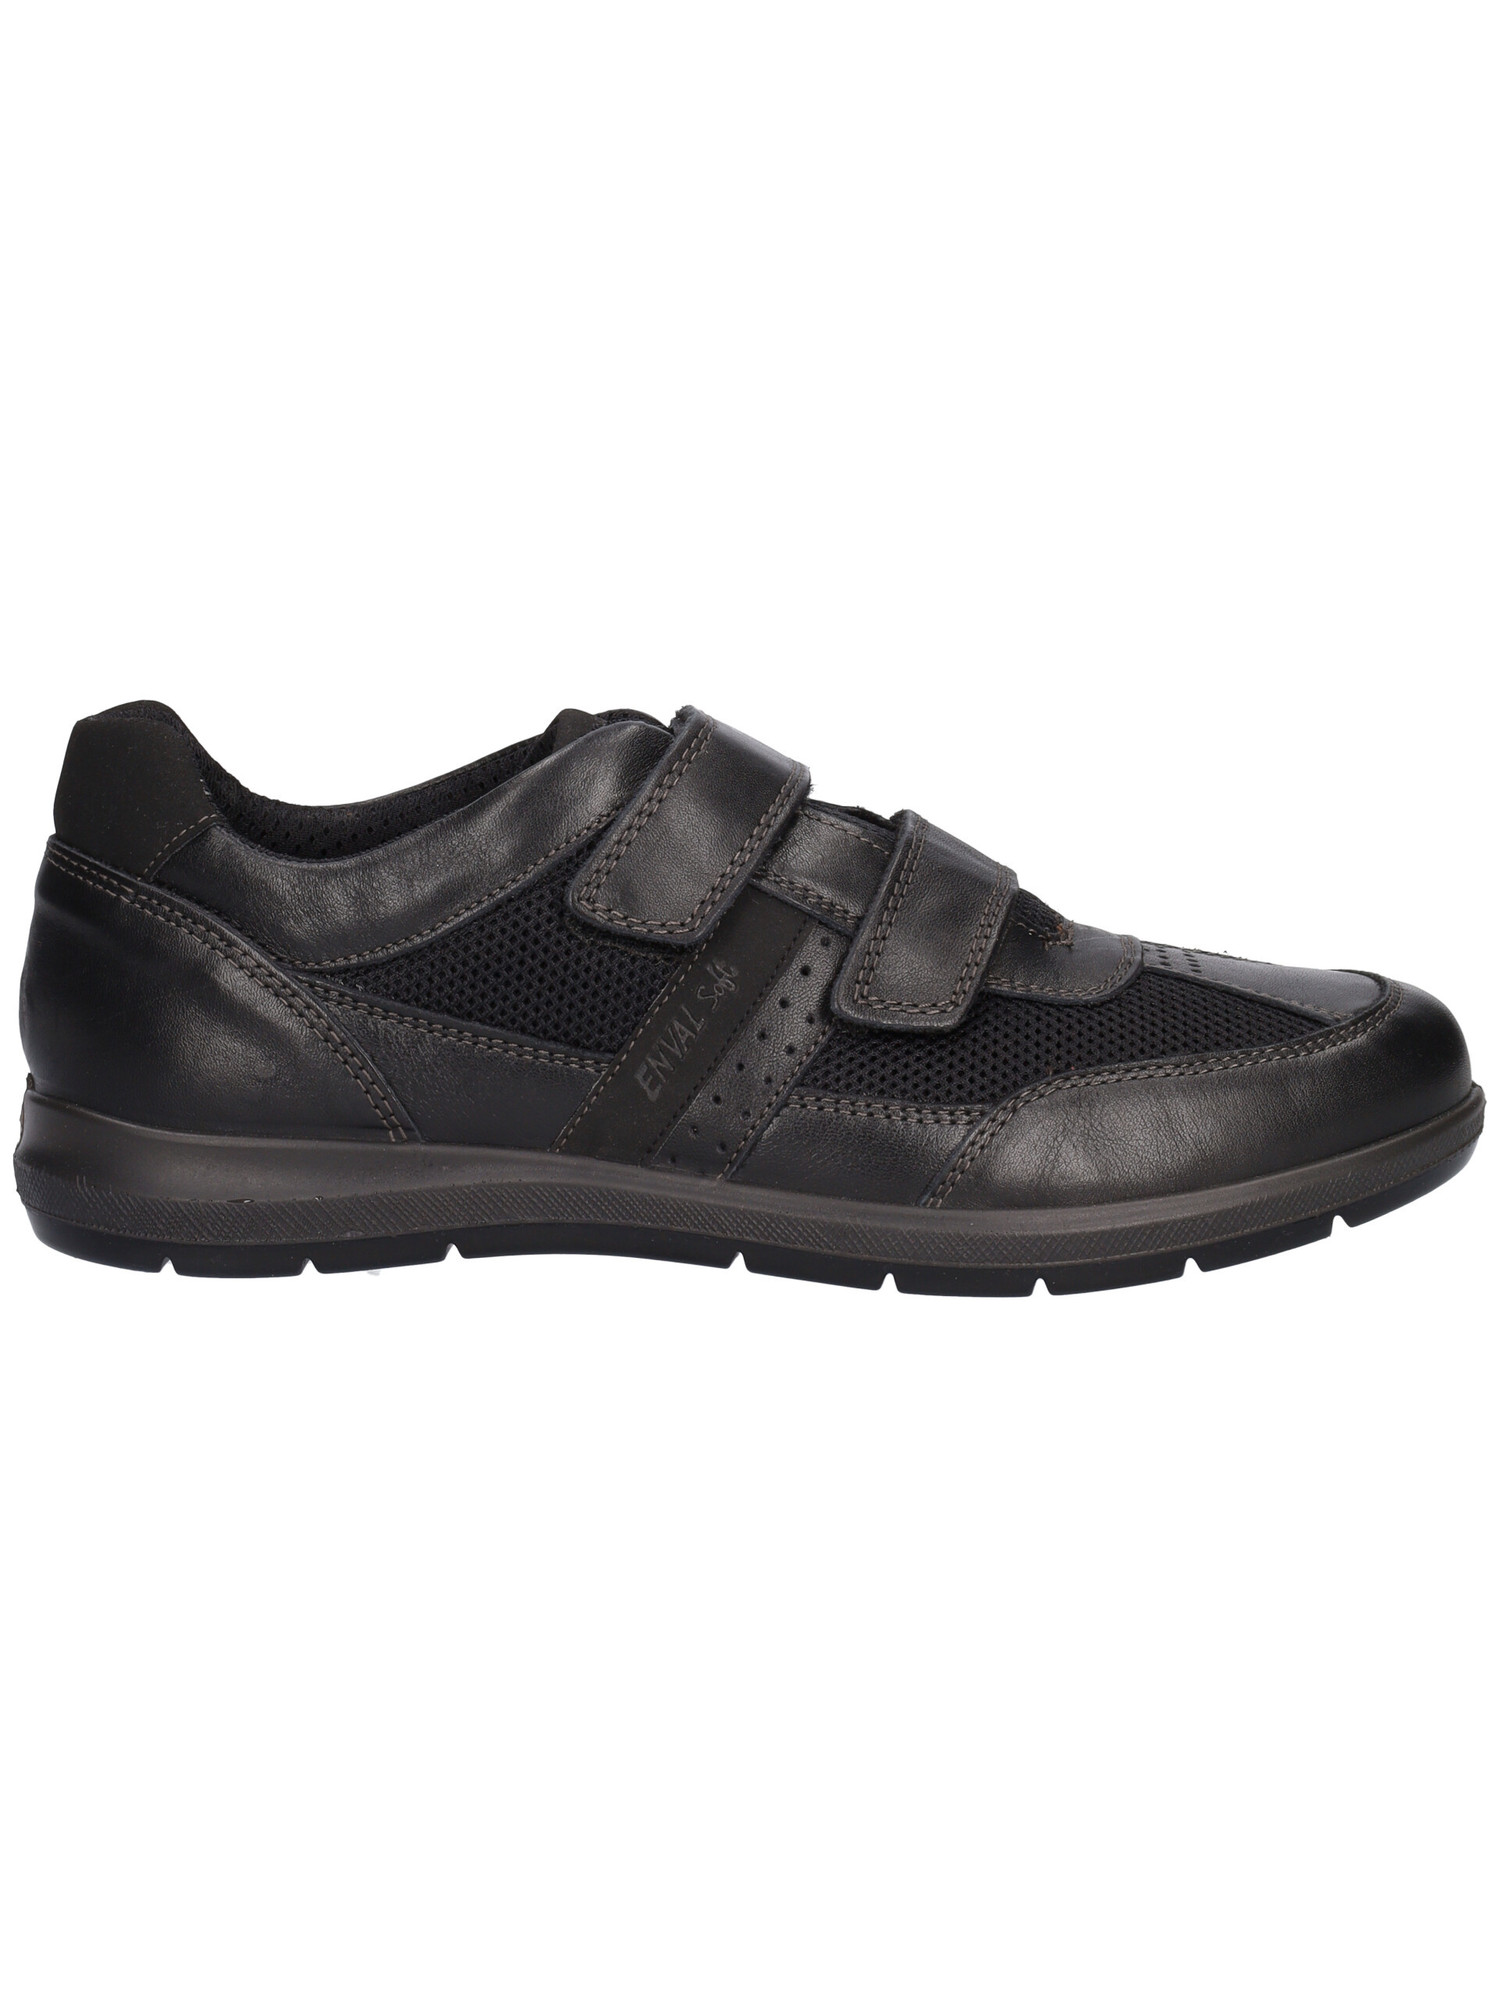 scarpa-casual-enval-soft-da-uomo-nera-9782ce